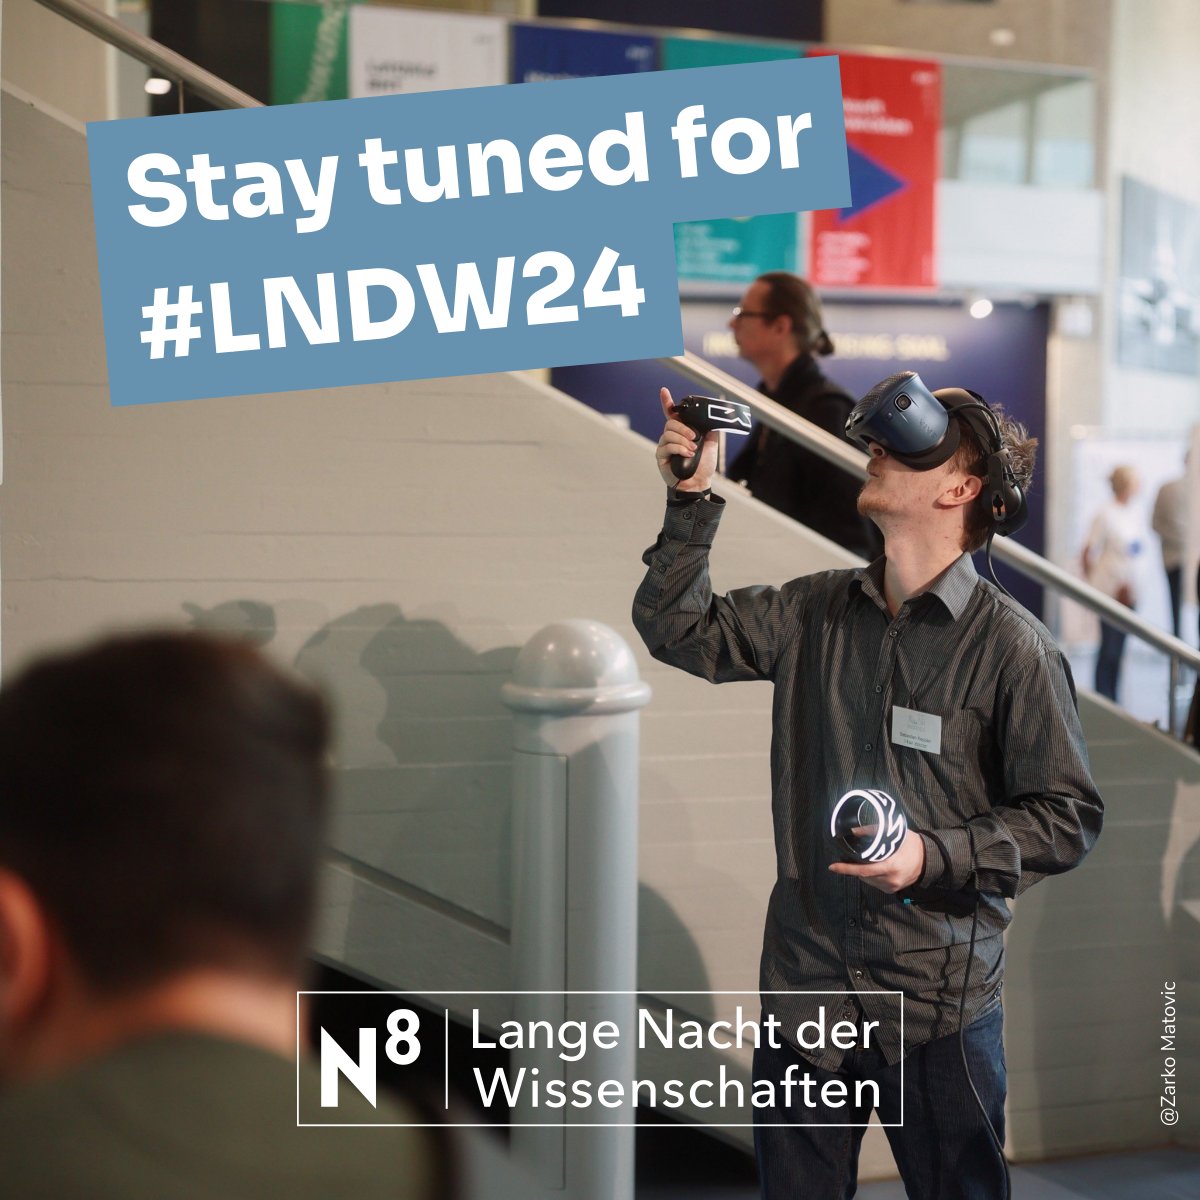 Ihr könnt die #LNDW24 am 22.6.24 kaum erwarten? 🤓🧪 Dann haben wir etwas für euch: Mit einem Newsletter-Abo erfahrt ihr als erstes, wann der Ticketvorverlauf im kommenden Jahr startet und welche spannenden Angebote euch erwarten. 📧 ➡️ bit.ly/43LUUwp #LNDW #Berlin